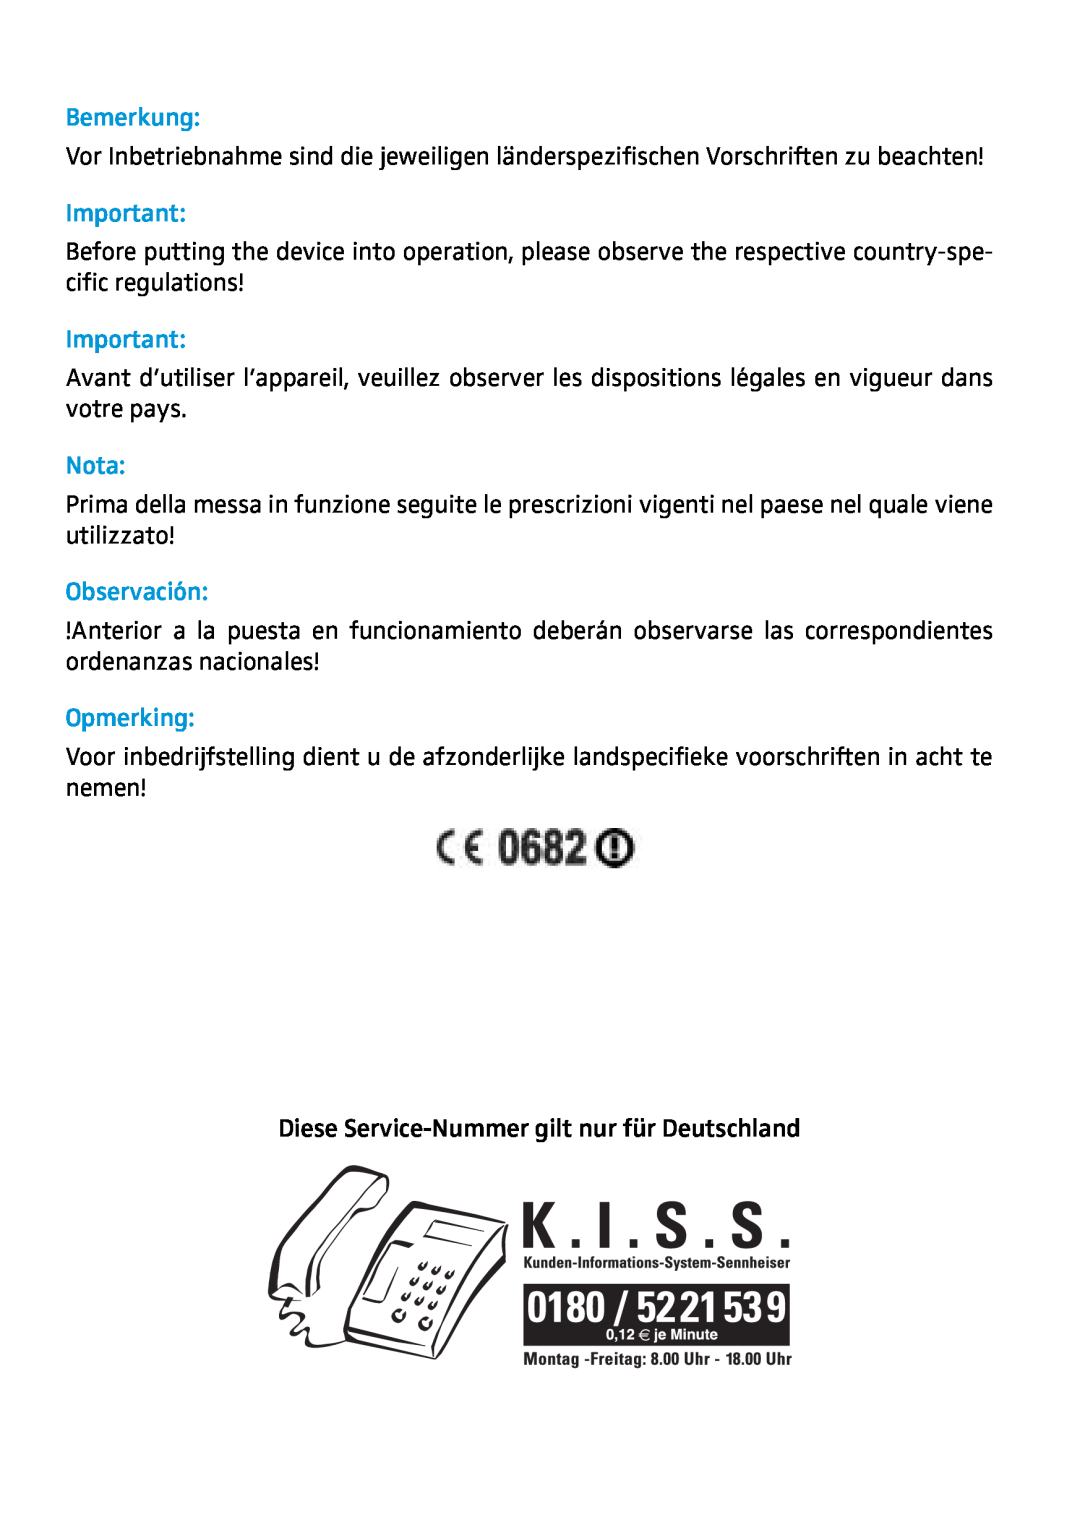 Sennheiser AC 2 manual Bemerkung, Nota, Observación, Opmerking, Diese Service-Nummer gilt nur für Deutschland 